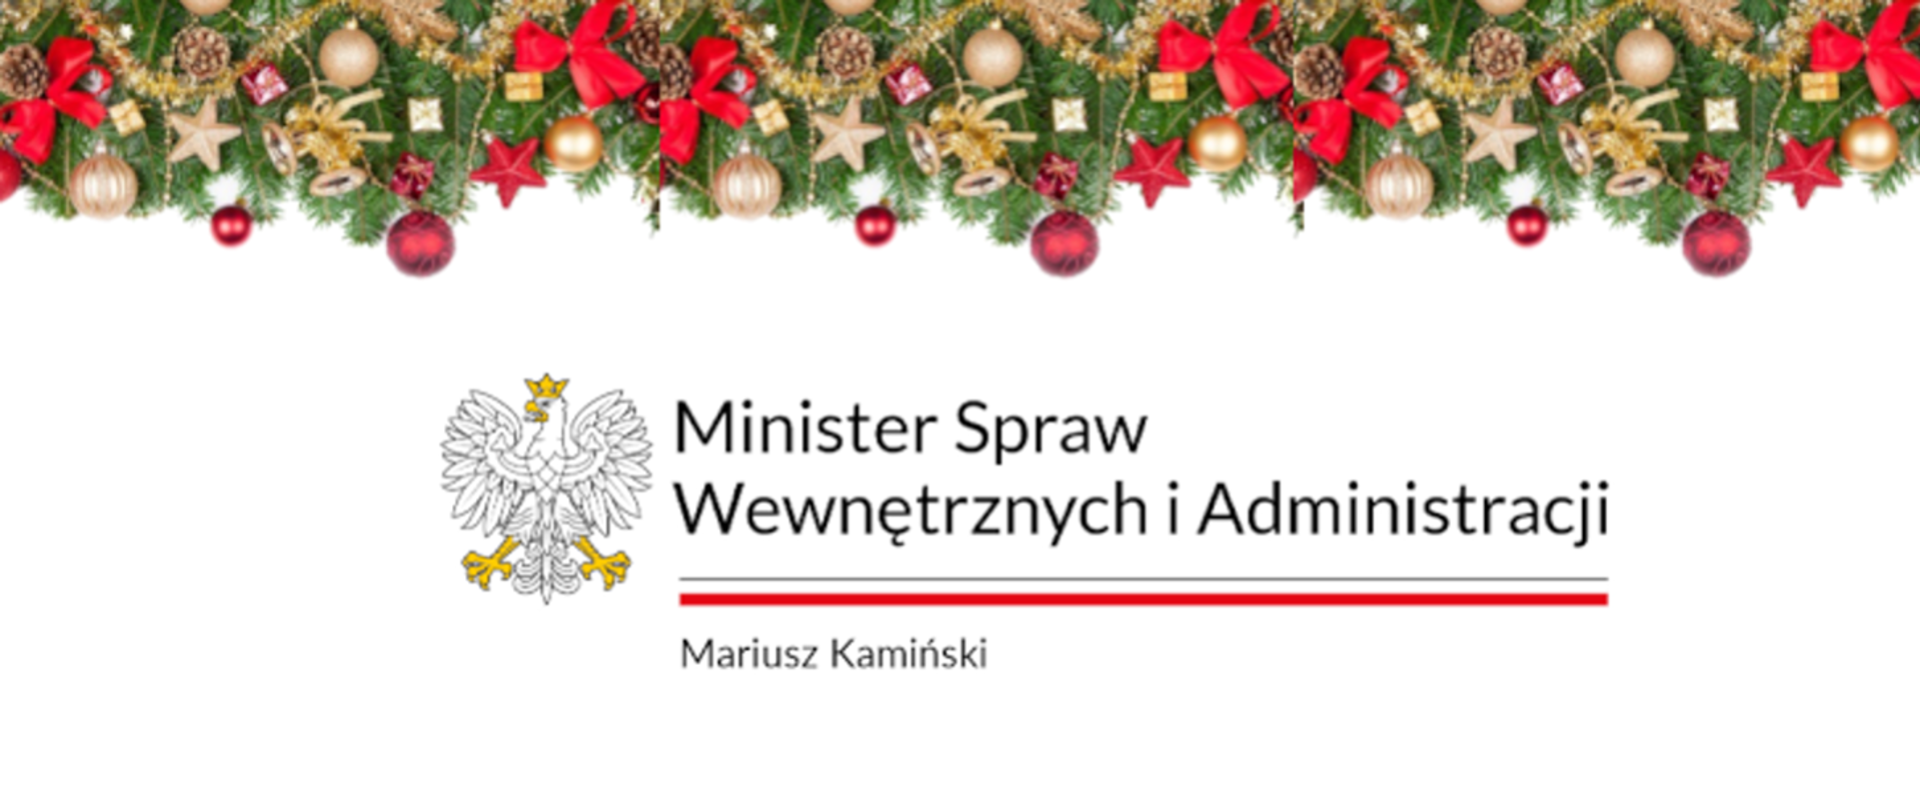 Życzenia Bożonarodzeniowe Ministra Spraw Wewnętrznych i Administracji